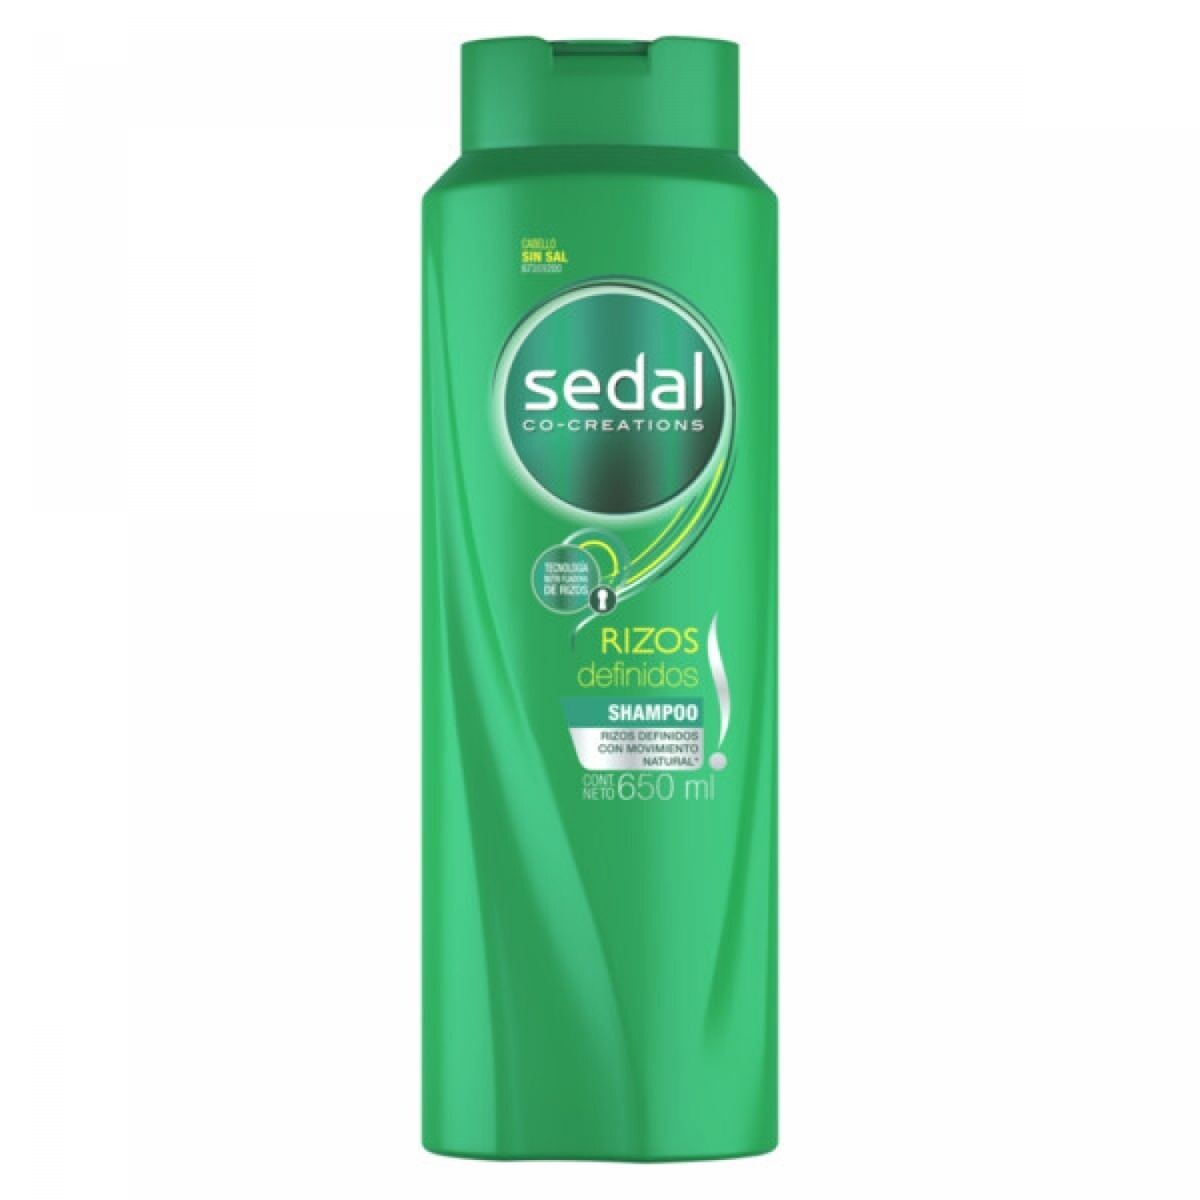 Shampoo Sedal Rizos Definidos 650 ML 